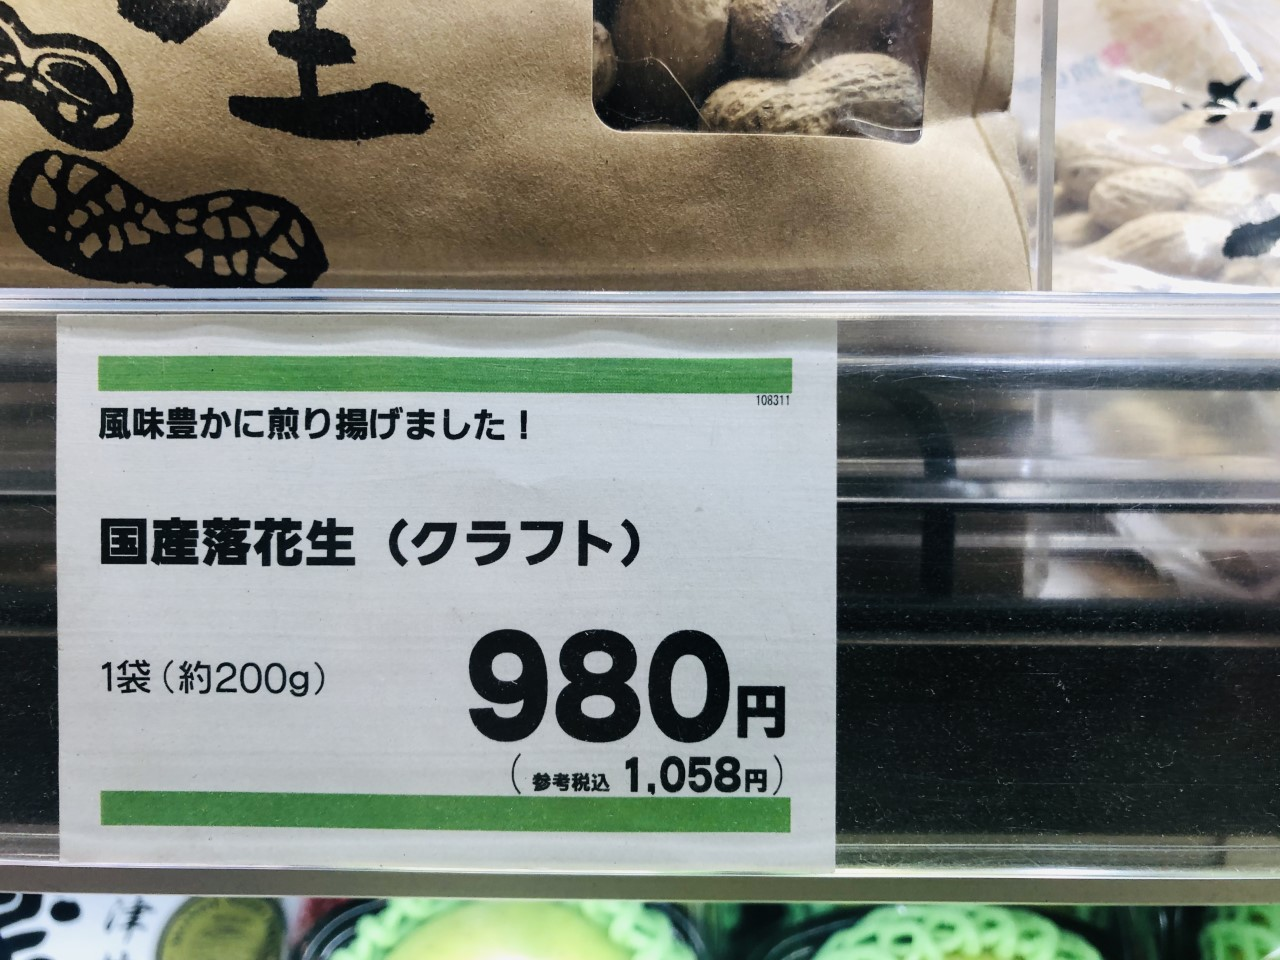 japanisches Preisschild im Laden